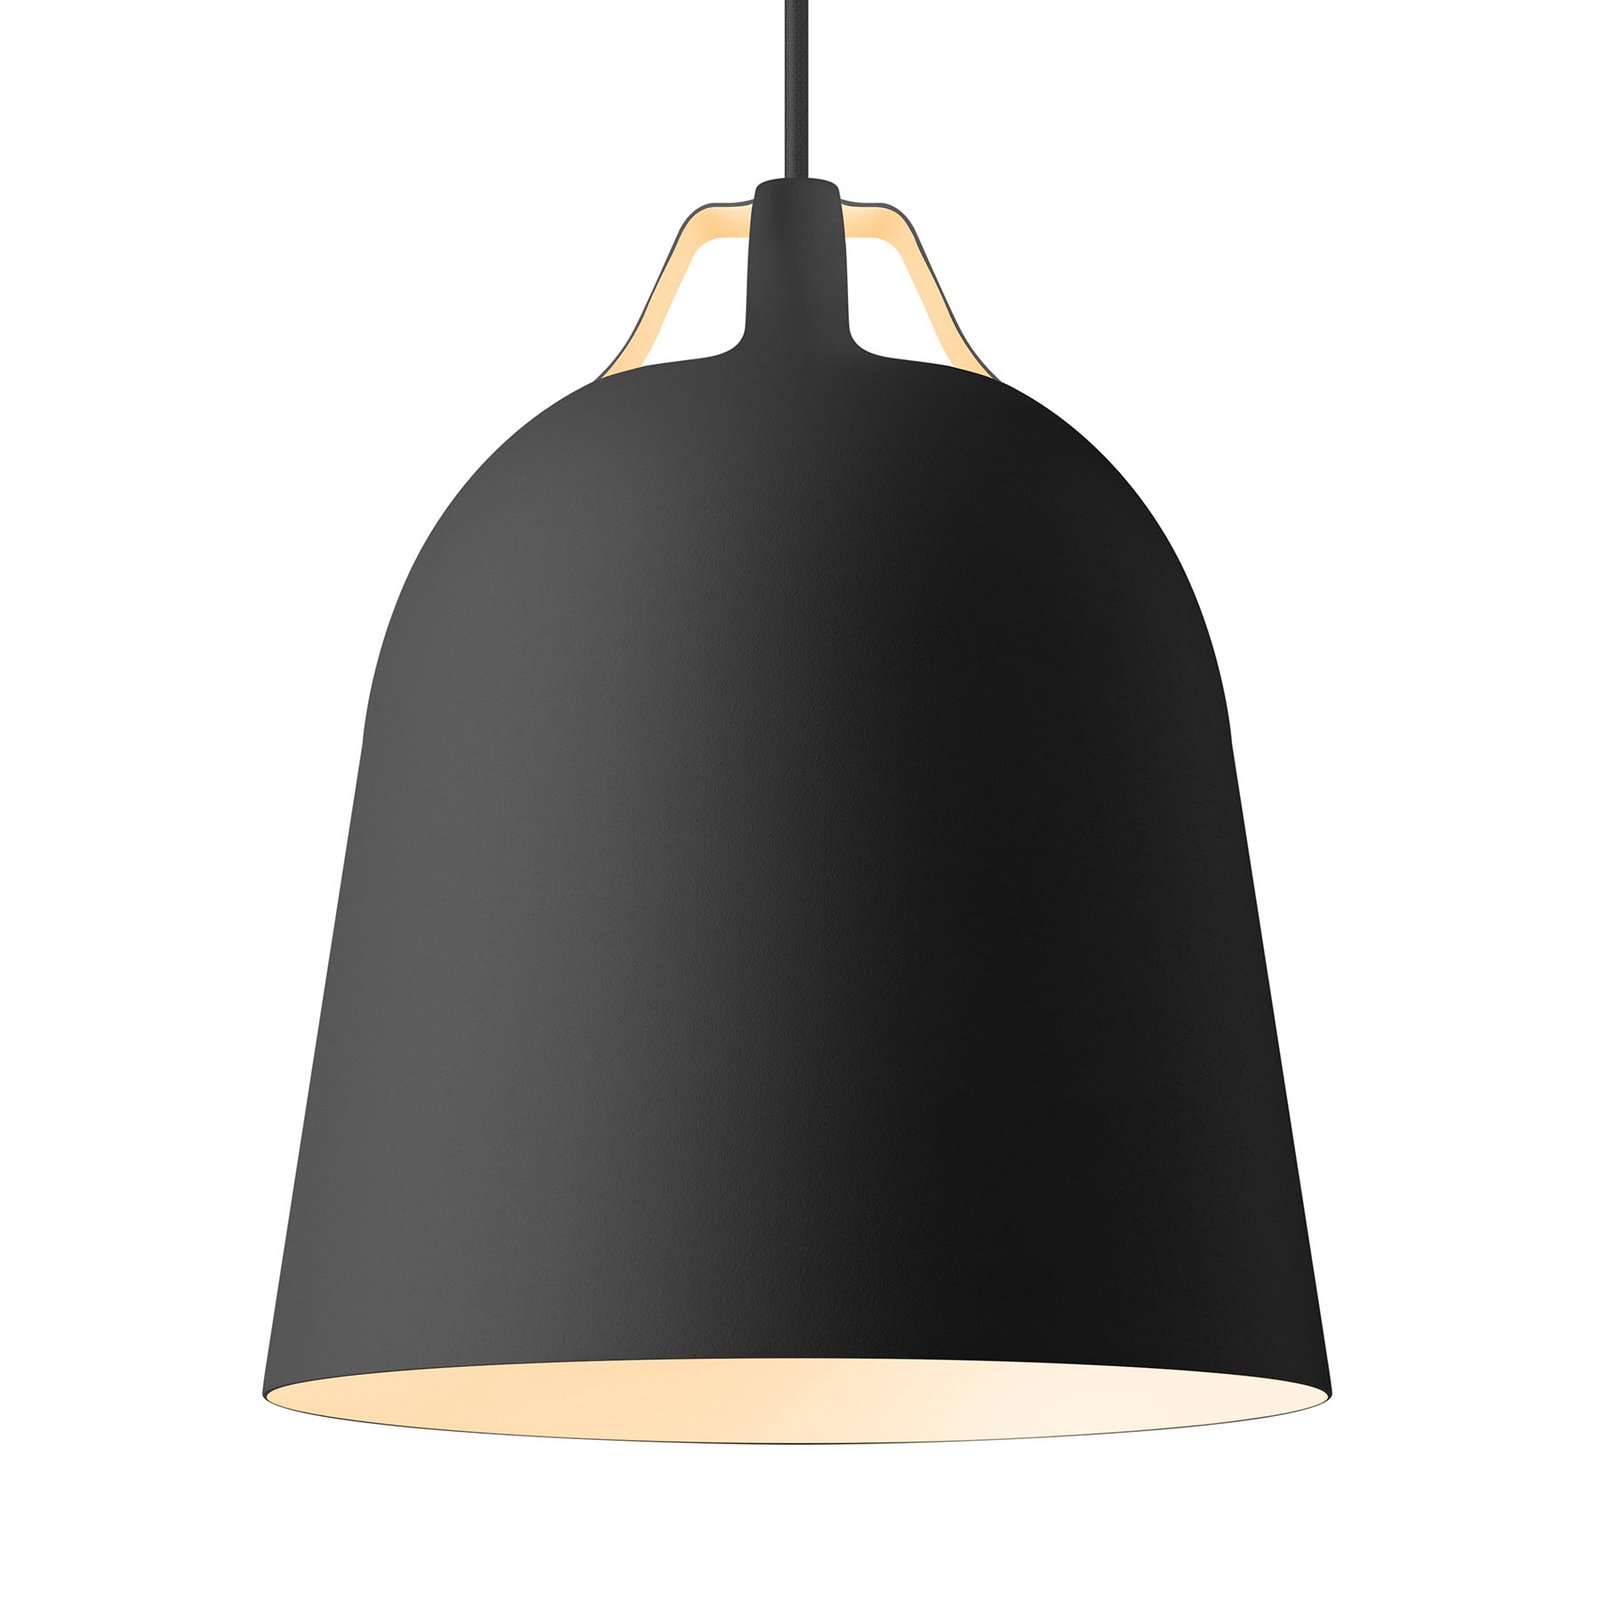 EVA Solo Clover lampa wisząca Ø 21cm, czarna